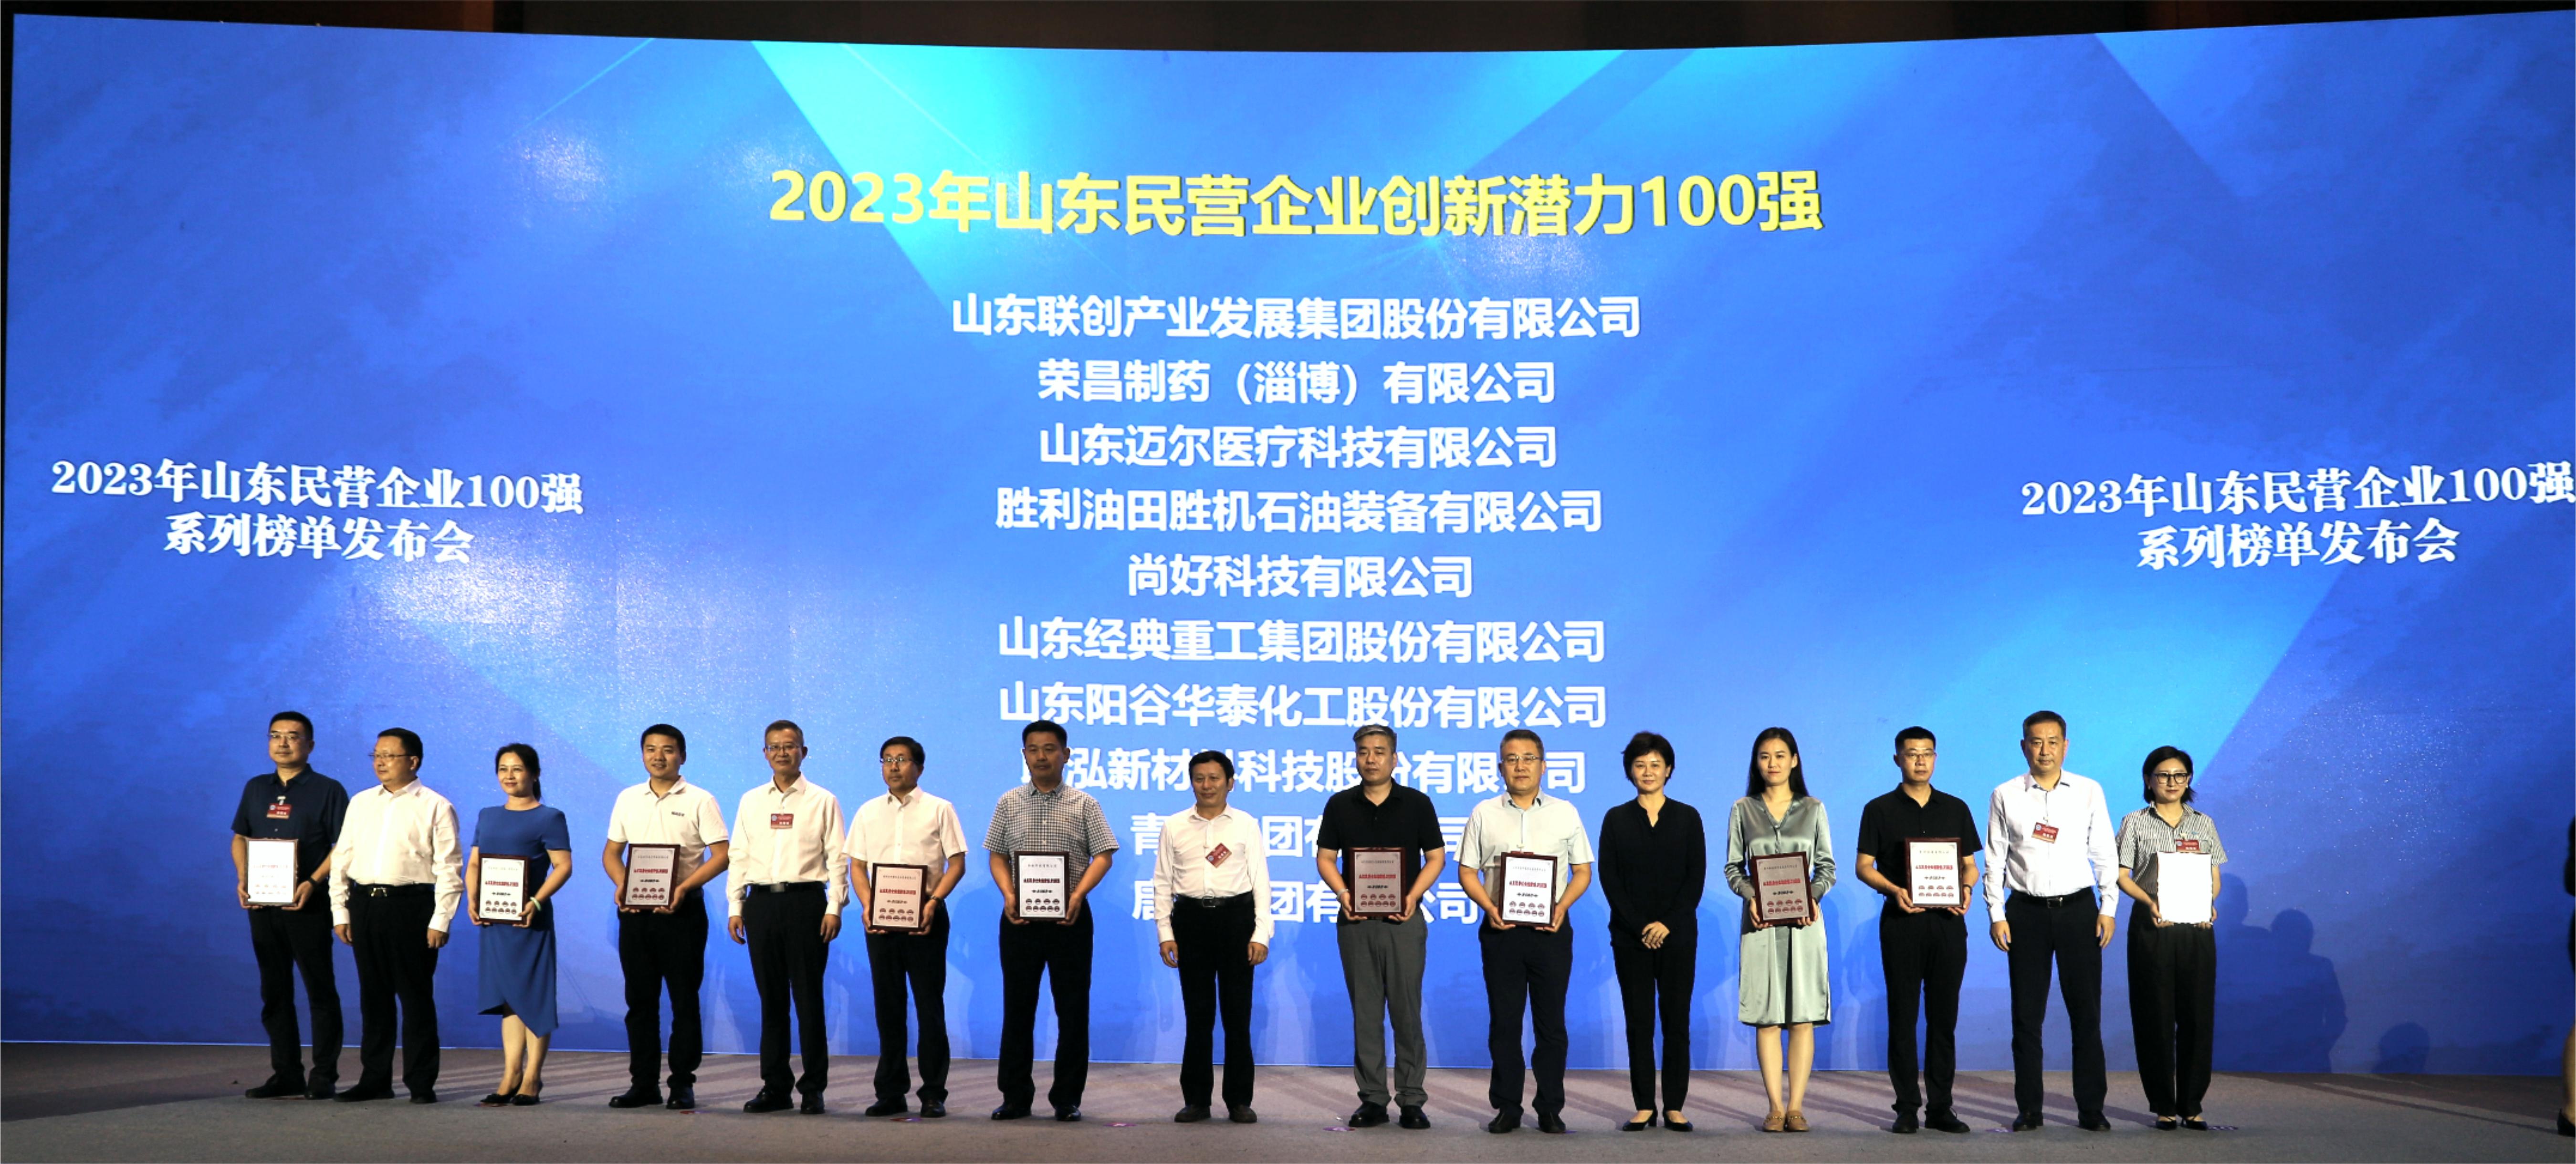 山東陽谷華泰化工股份有限公司獲得 “2023年山東民營企業創新潛力100強”稱號